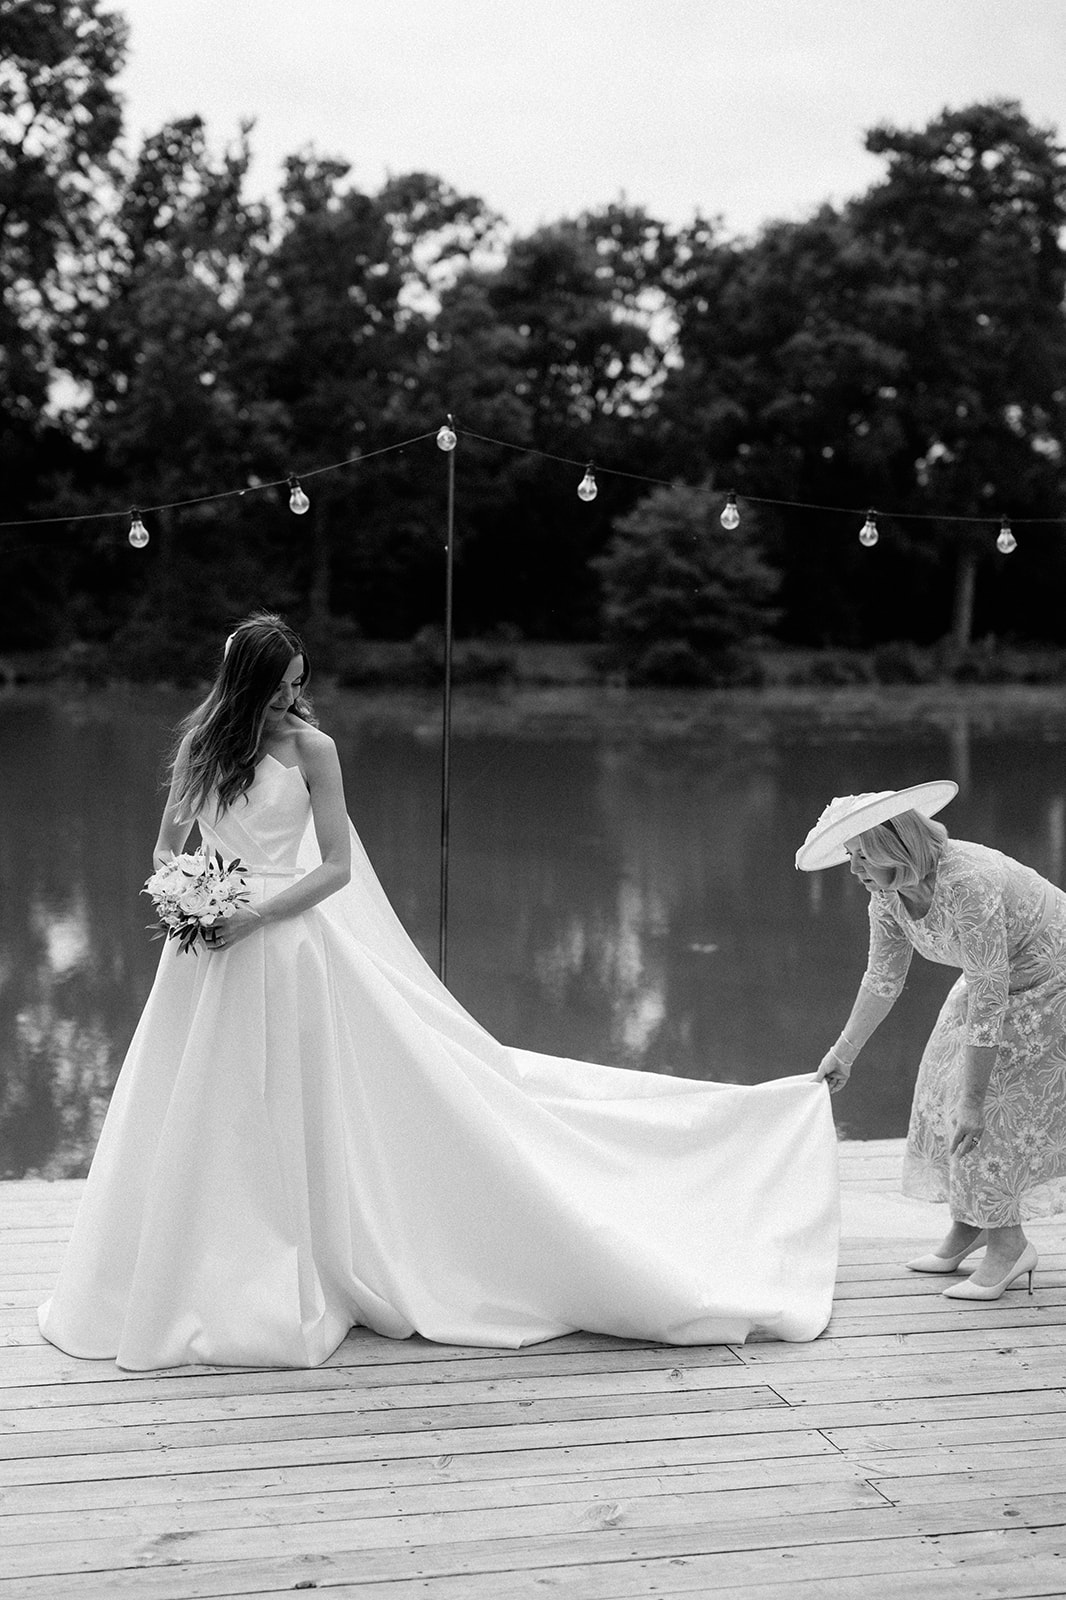 brides mum adjusting brides wedding dress in front of lake backdrop at barns and yard